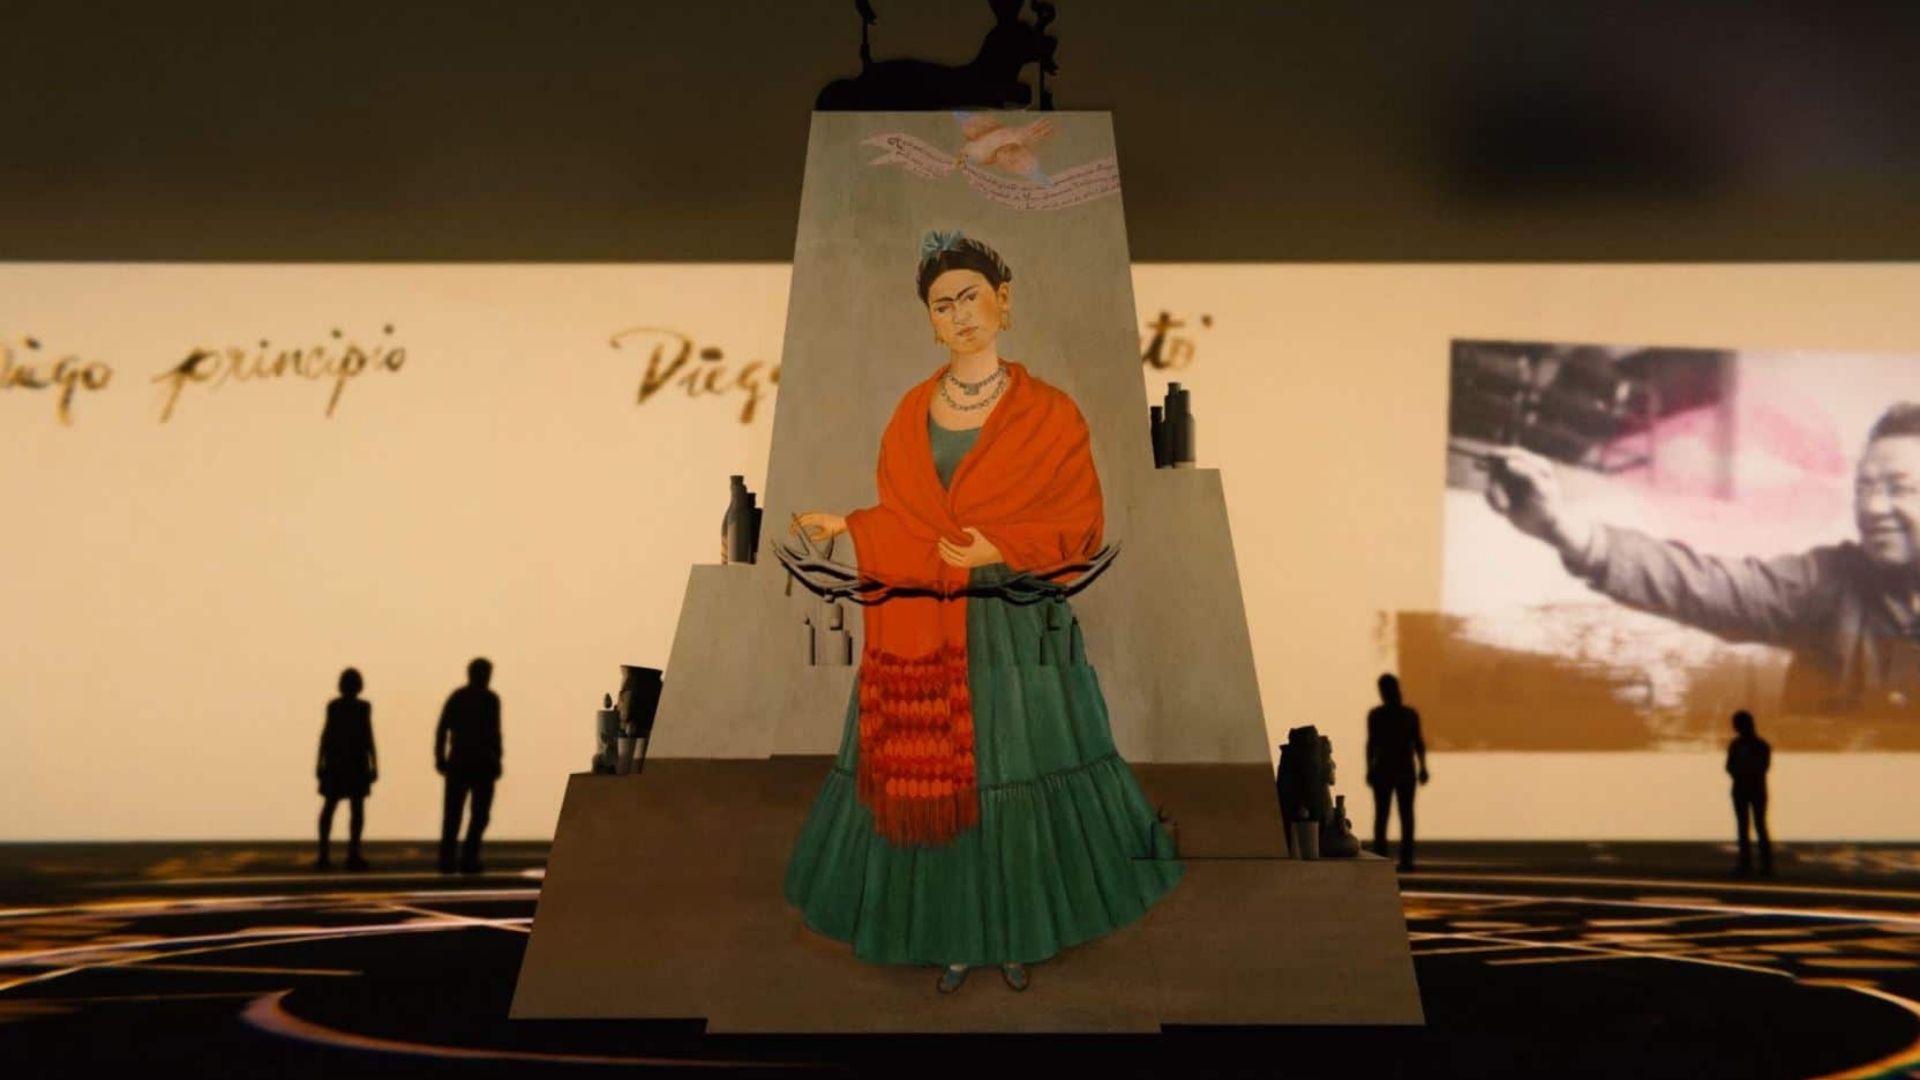 Exposición visual sobre la vida y obra de Frida Kahlo llega a Madrid